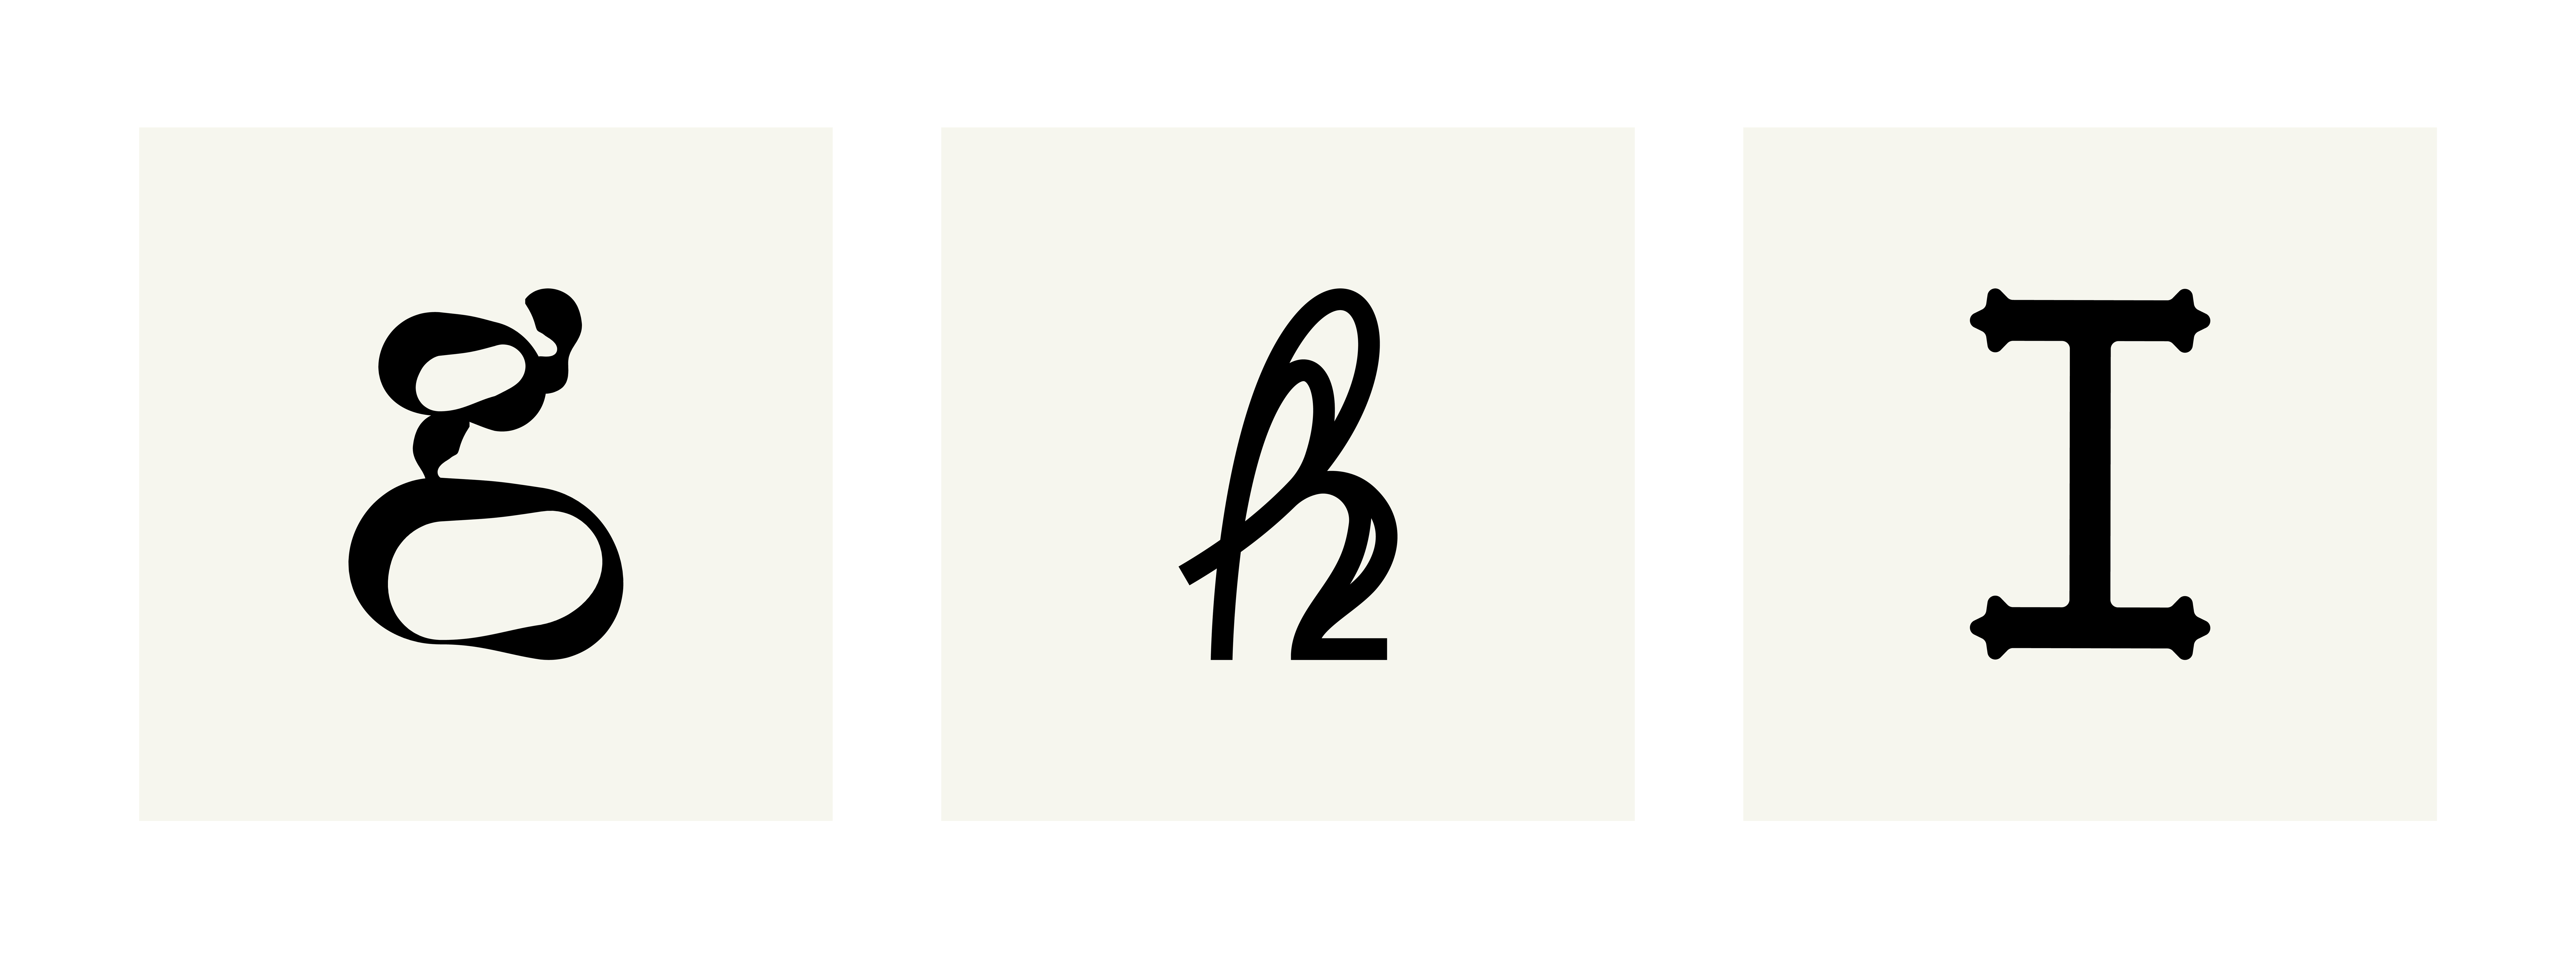 julie-pirovani-typographie-abecedaire-libre-planche-GHI